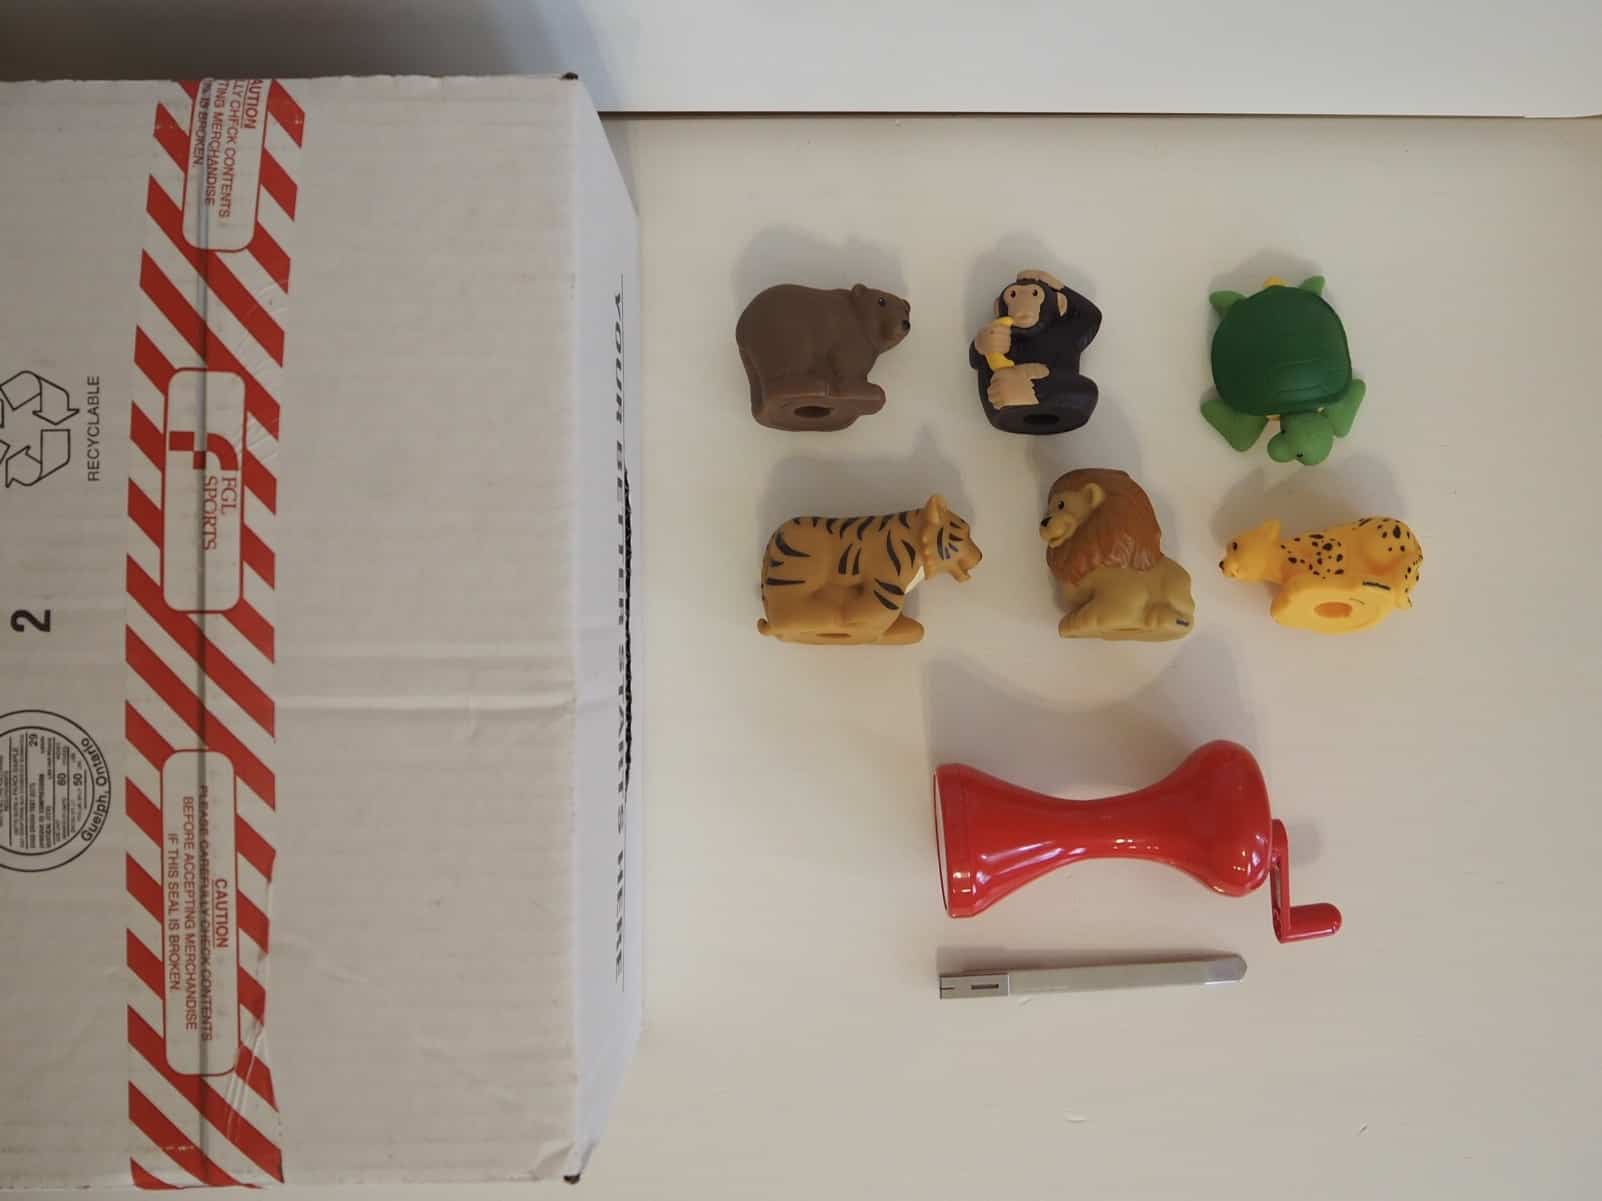 紙箱、美工刀、手電筒、小動物玩具們